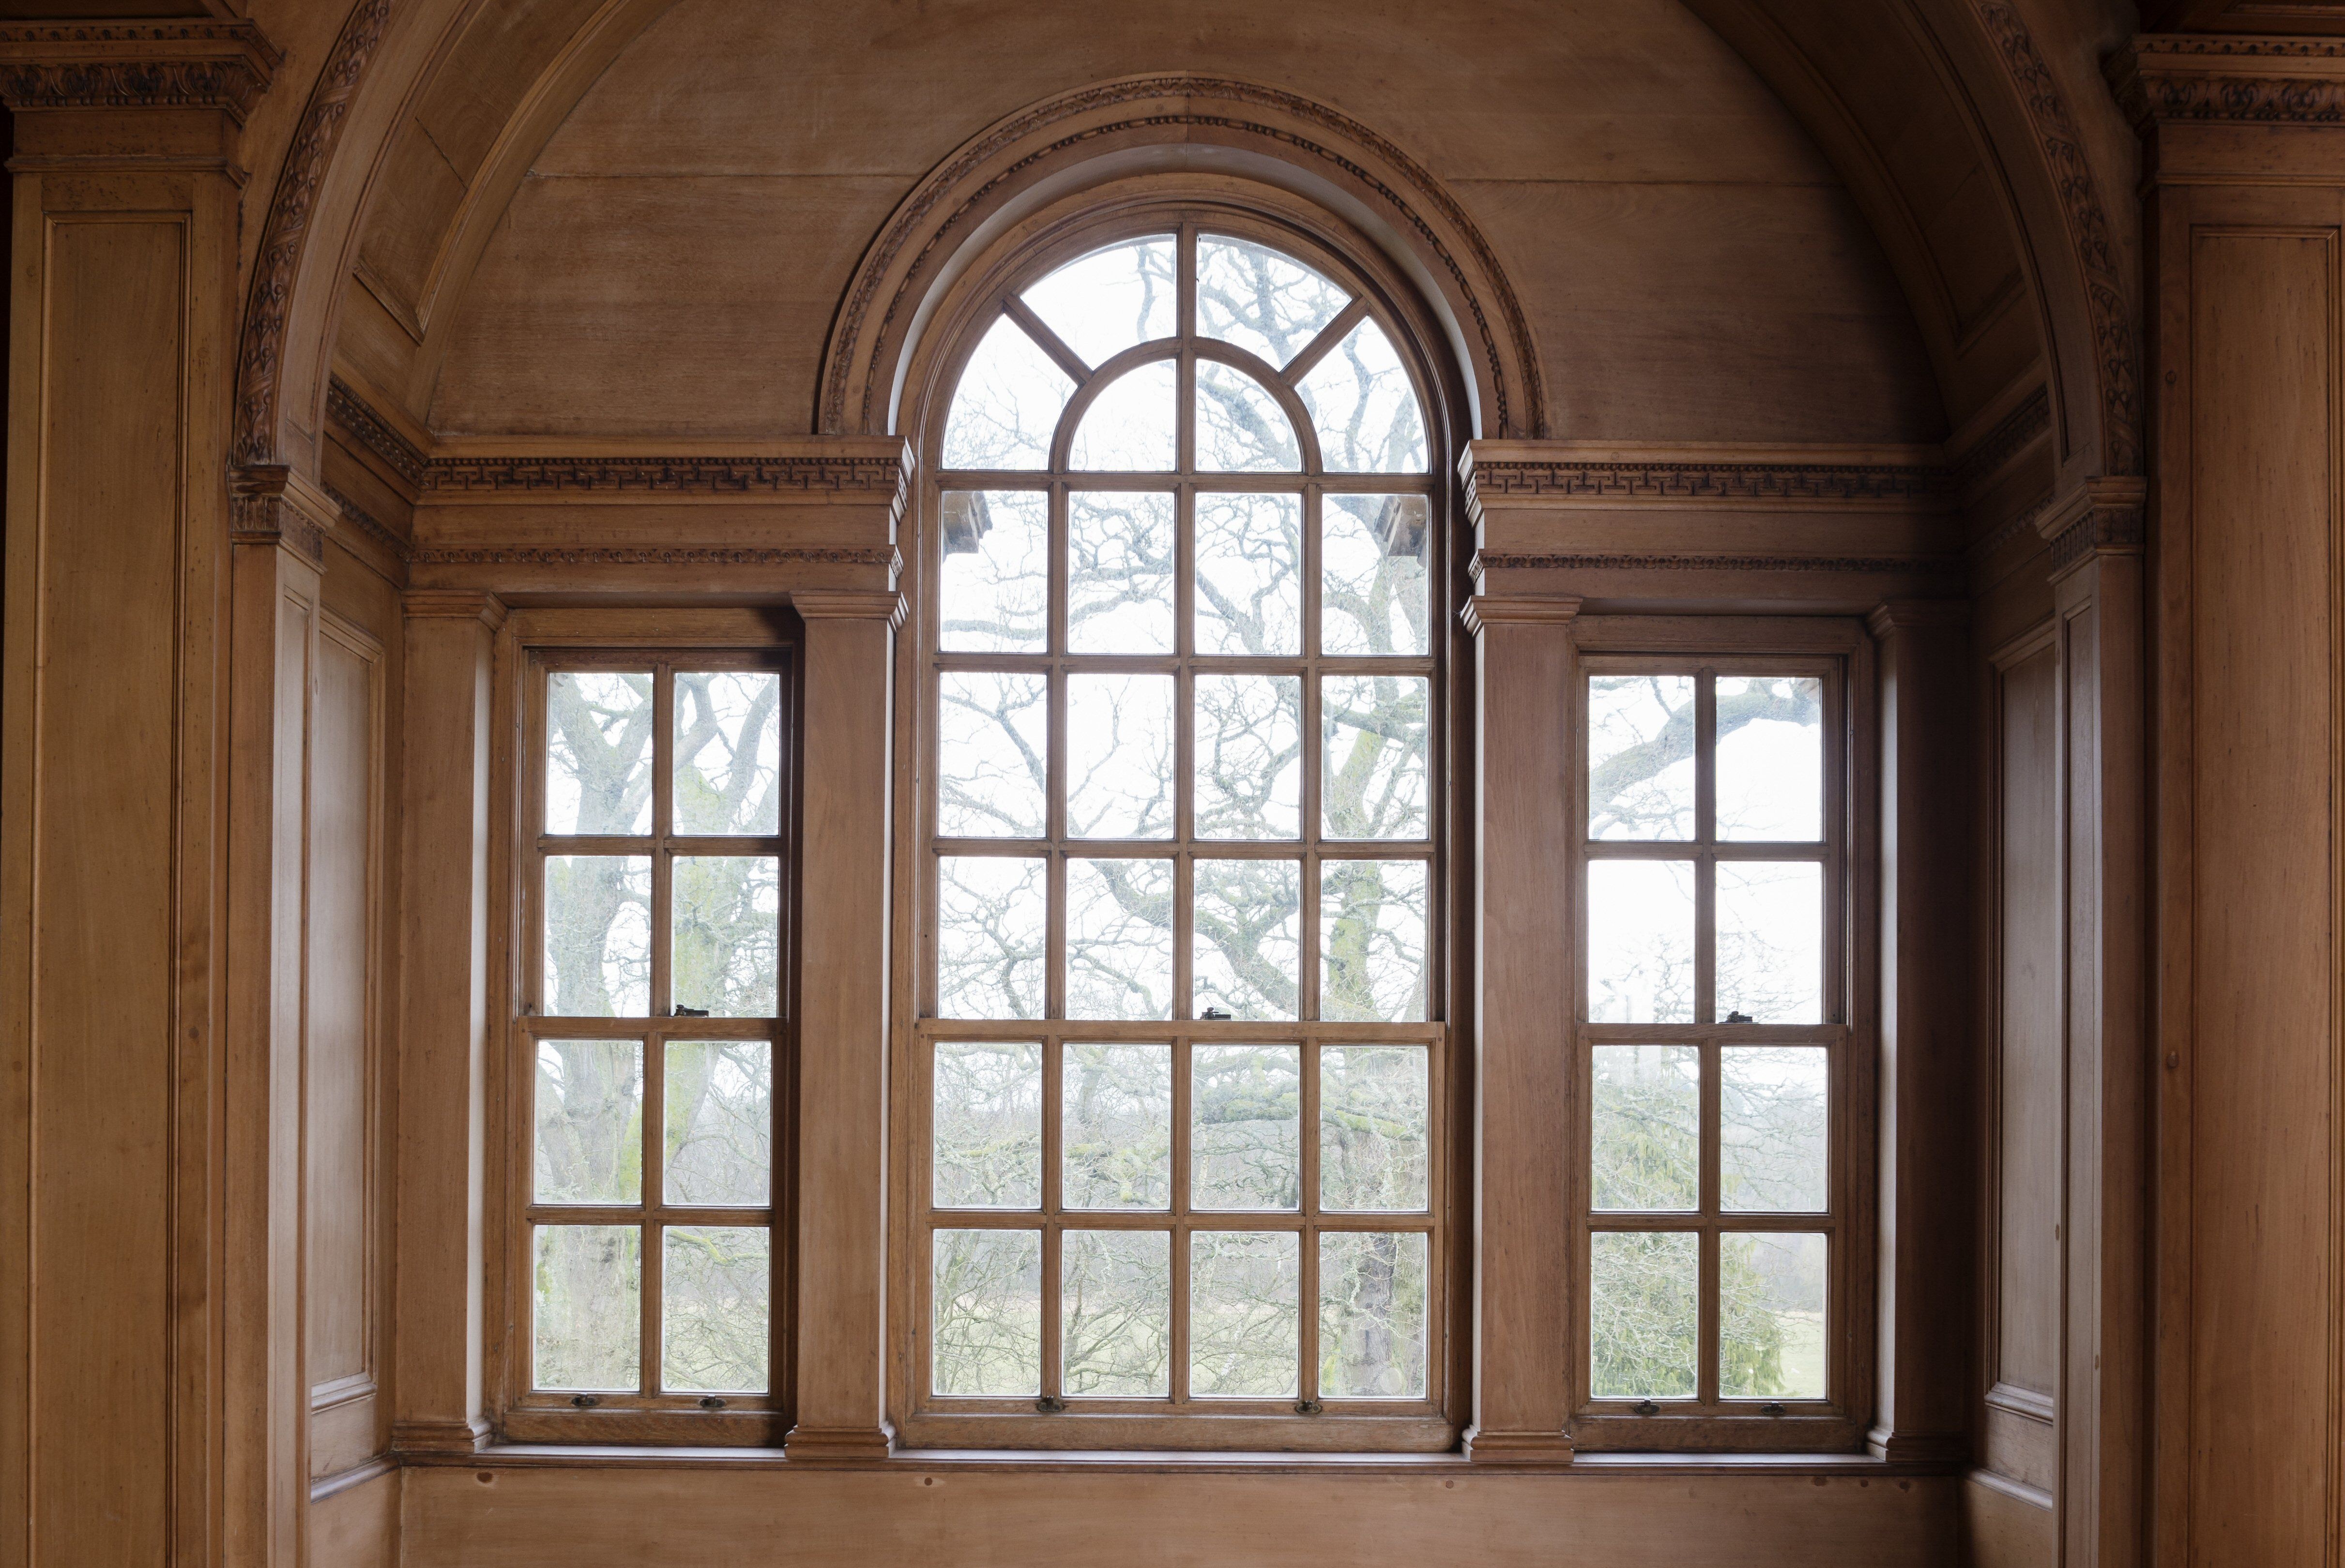 Окна 19 века. Венецианские окна Палладио. Венецианское окно (окно Палладио). Венецианское (палладианское) окно. Палладианские окна.